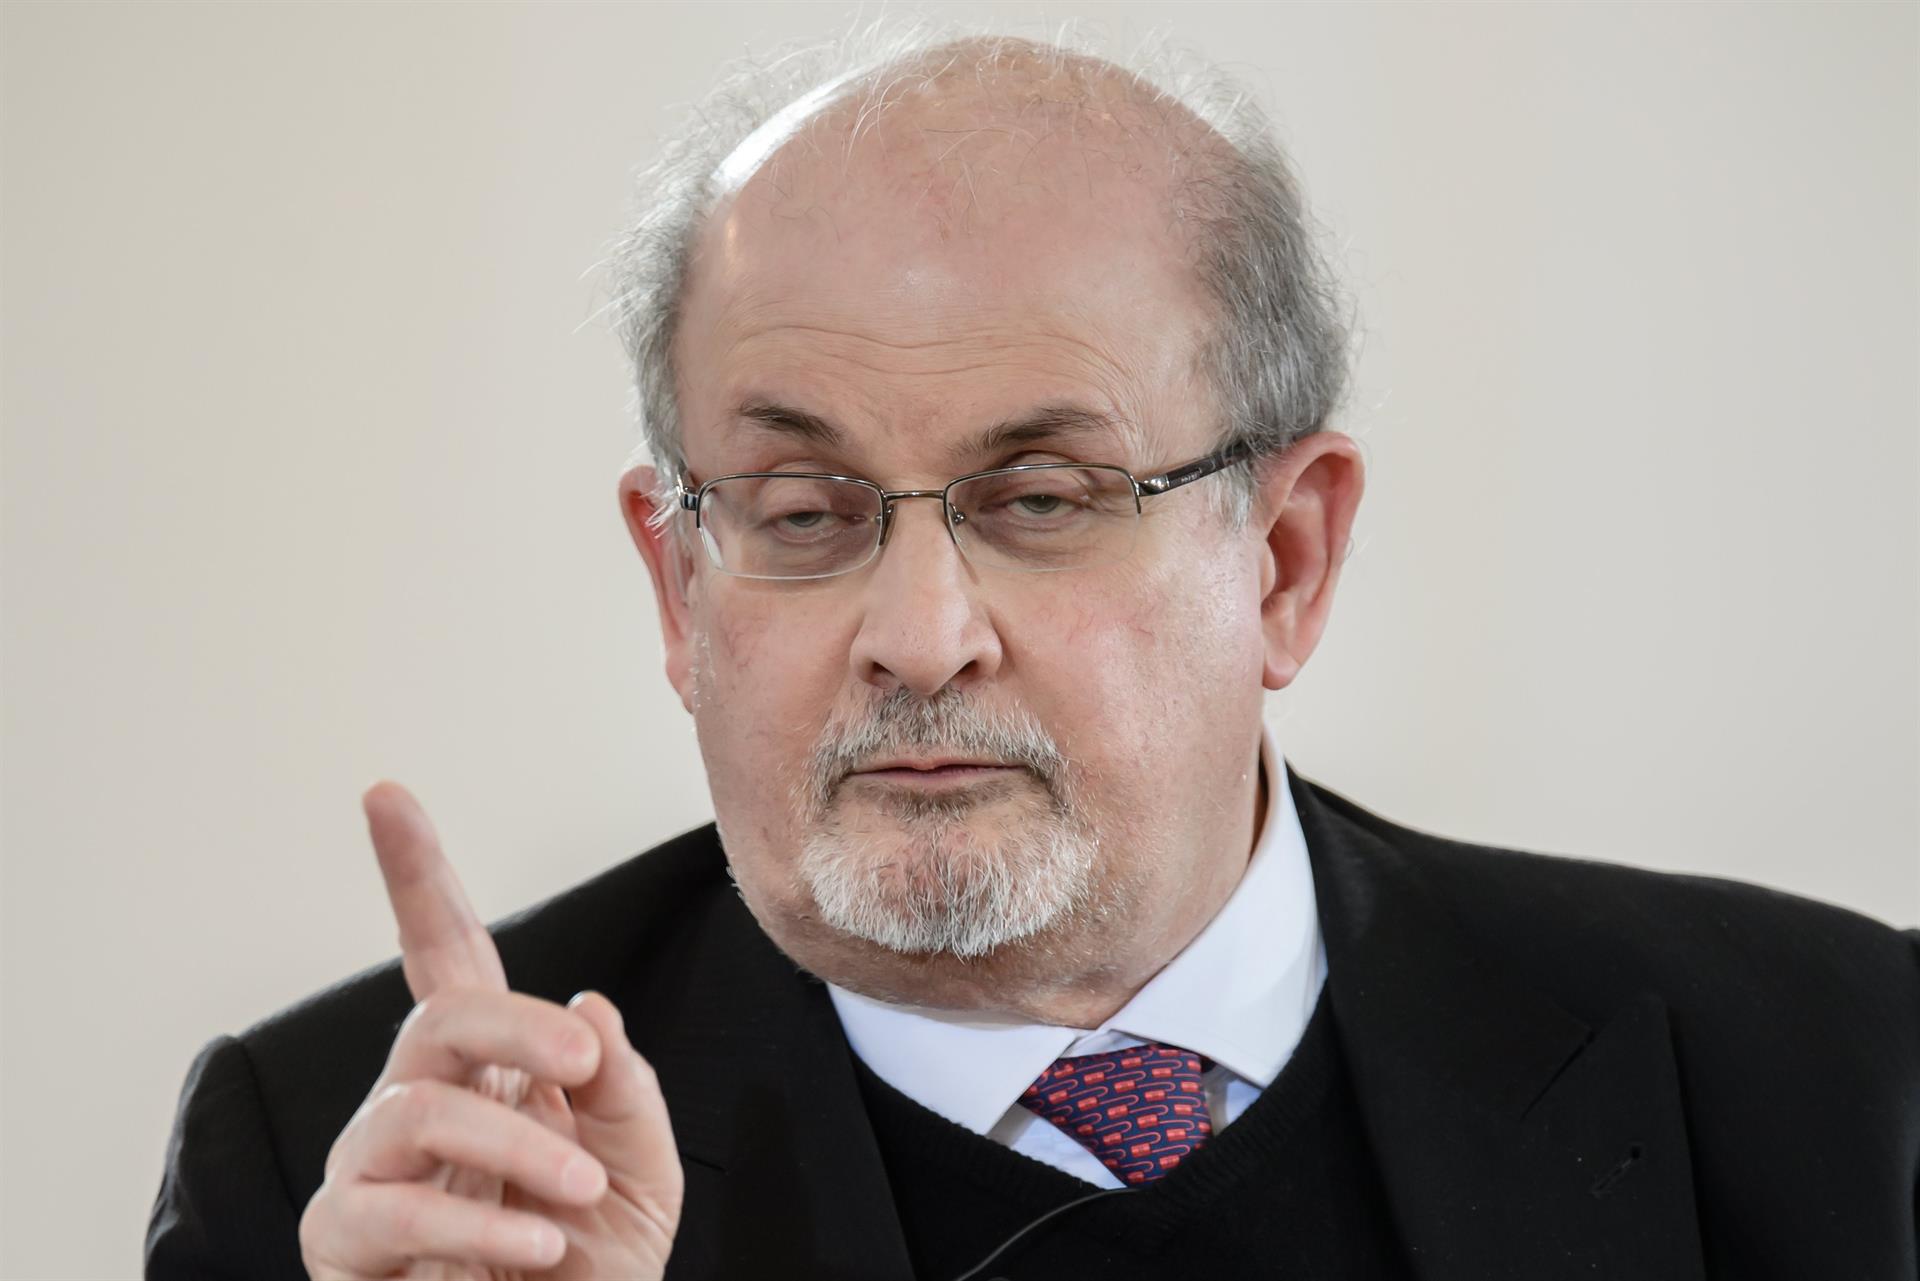 El agente de Salman Rushdie contó que el escritor perdió un ojo y la movilidad de una mano tras el atentado